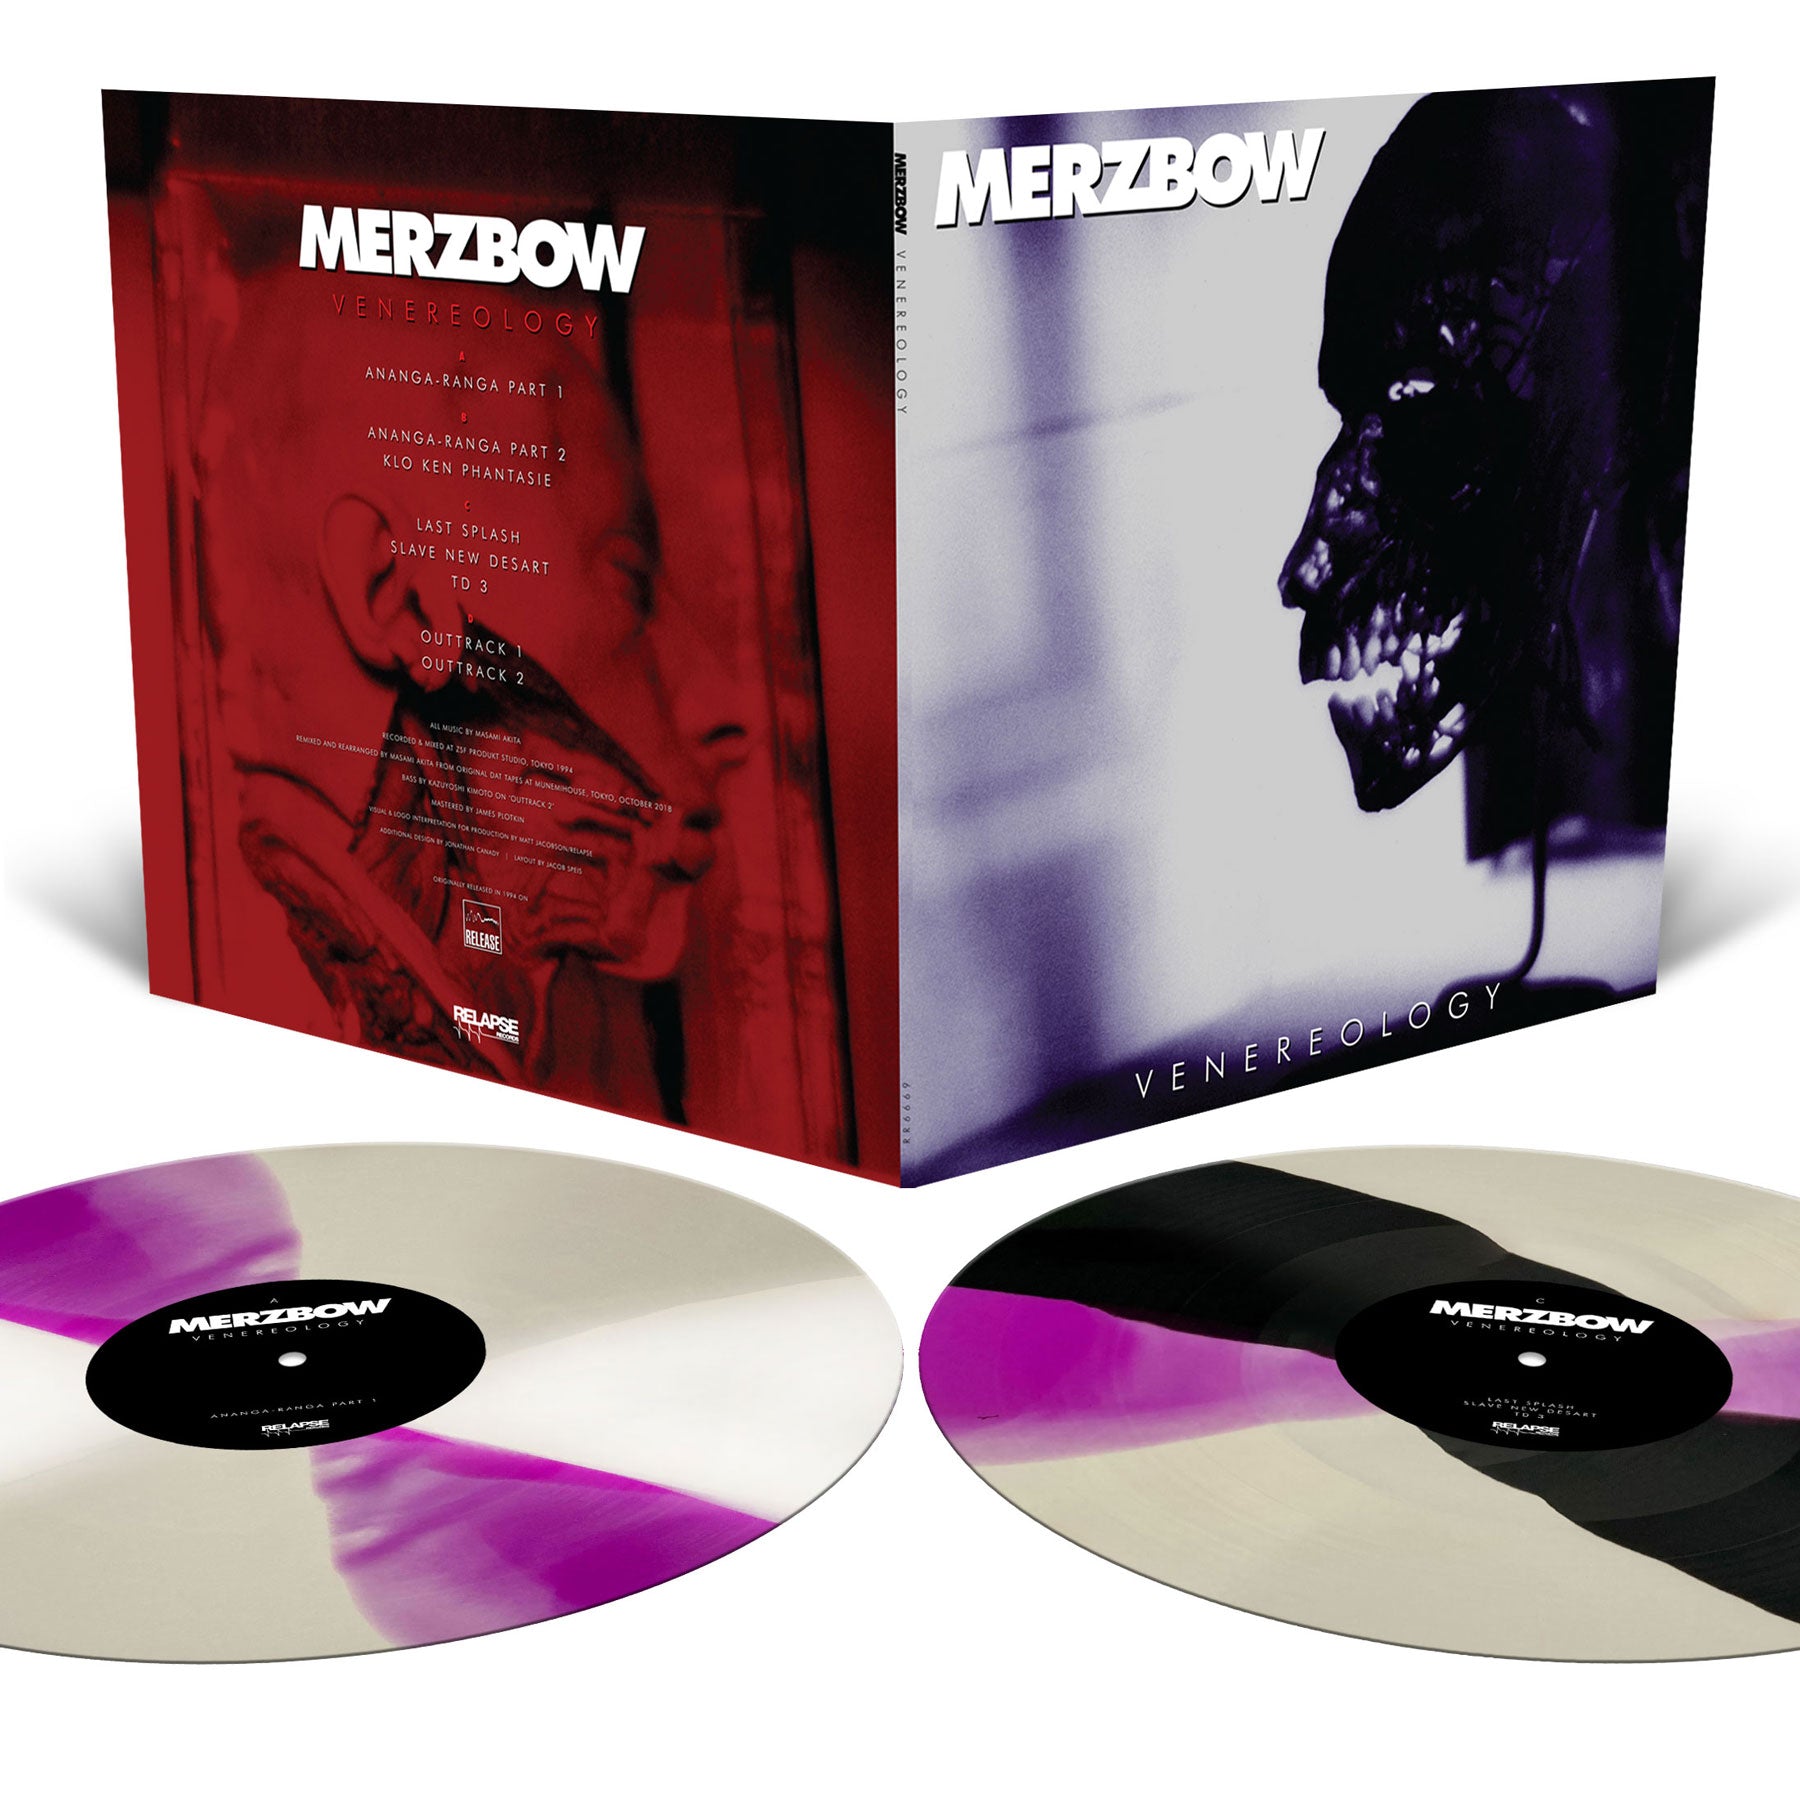 Merzbow "Venereology Reissue" 2x12"